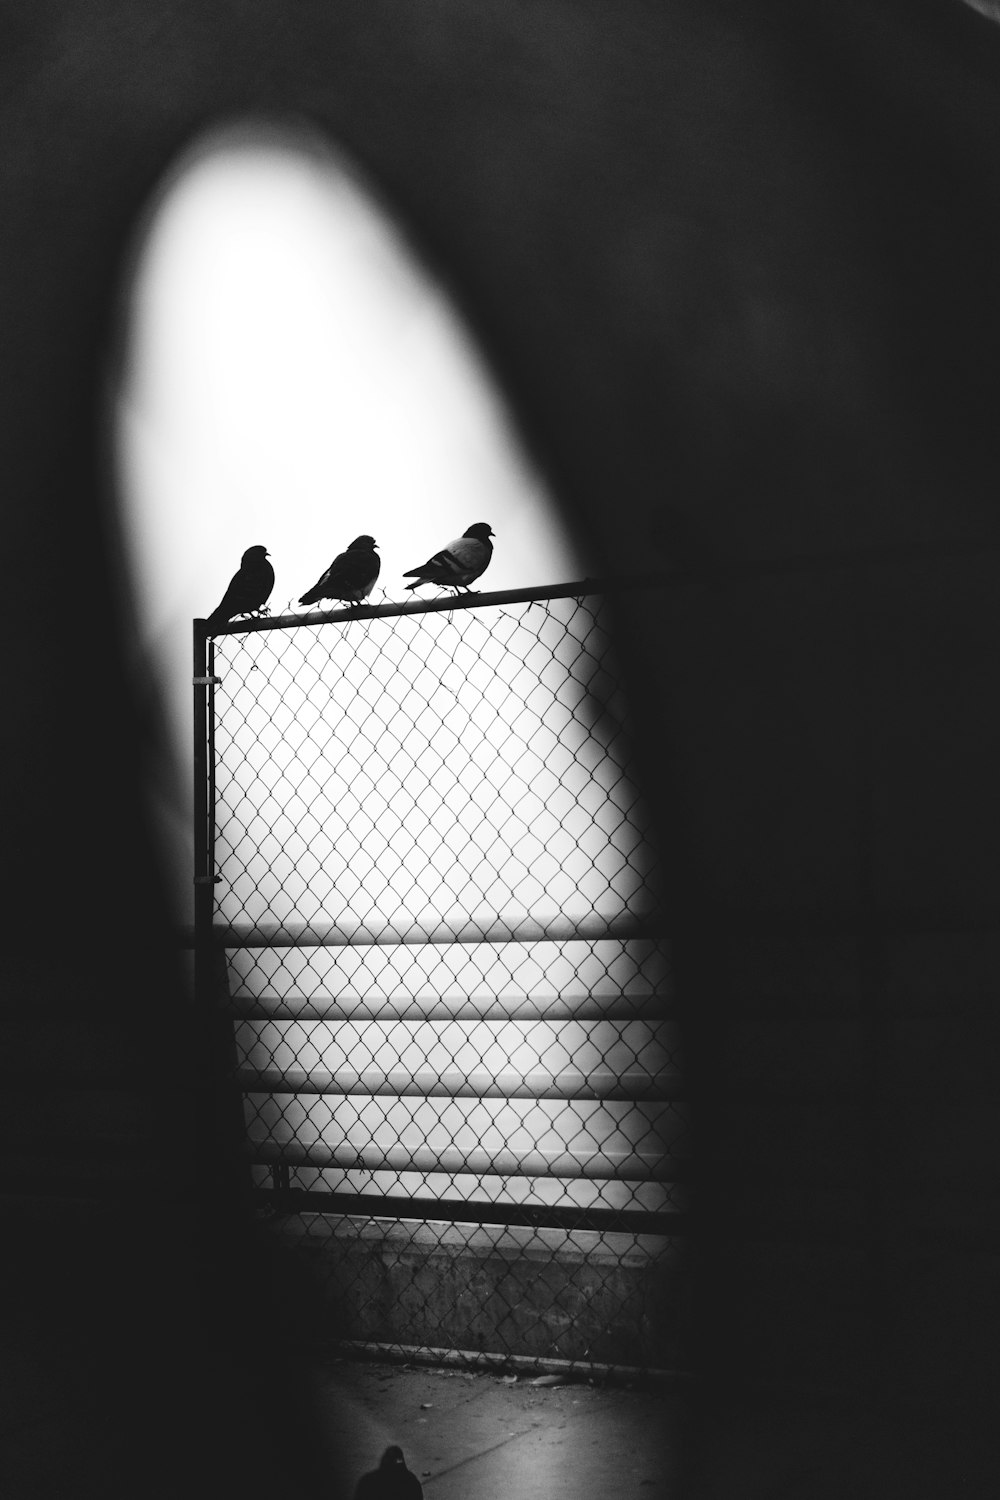 그레이 스케일 사진 세 마리의 비둘기